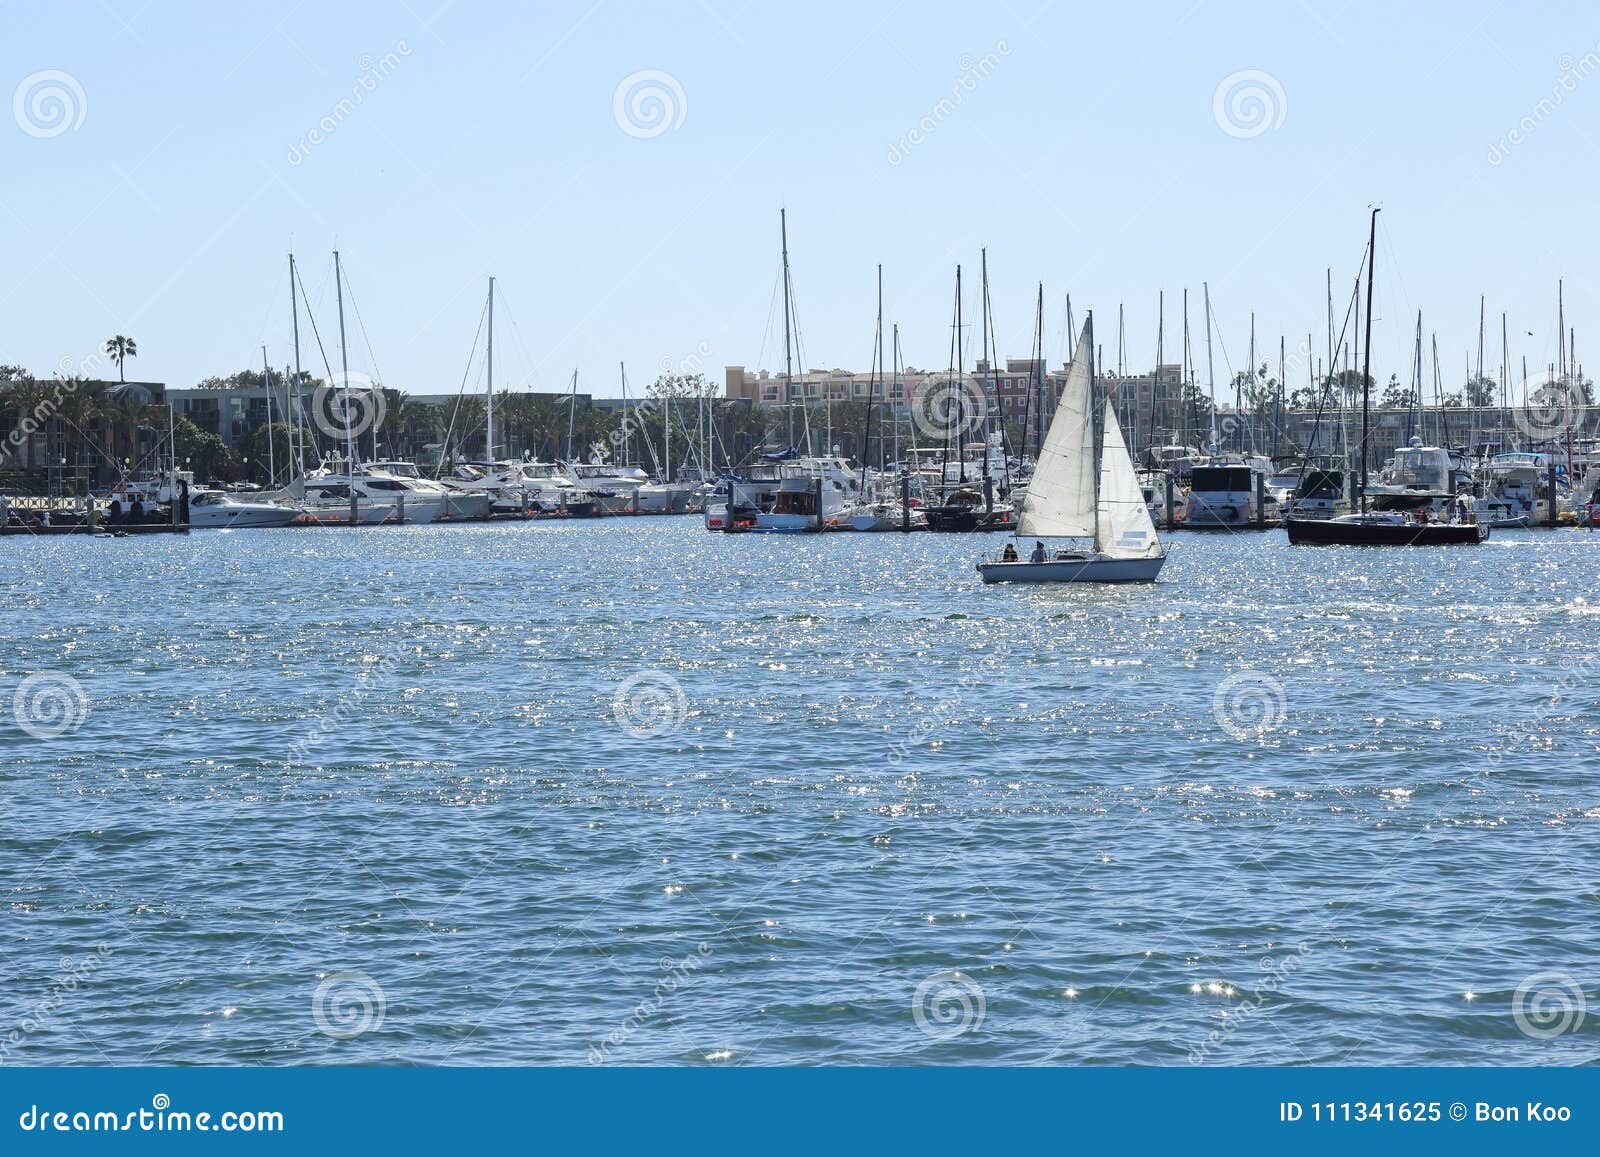 Sailing at Marina Del Rey, California Editorial Image - Image of ...